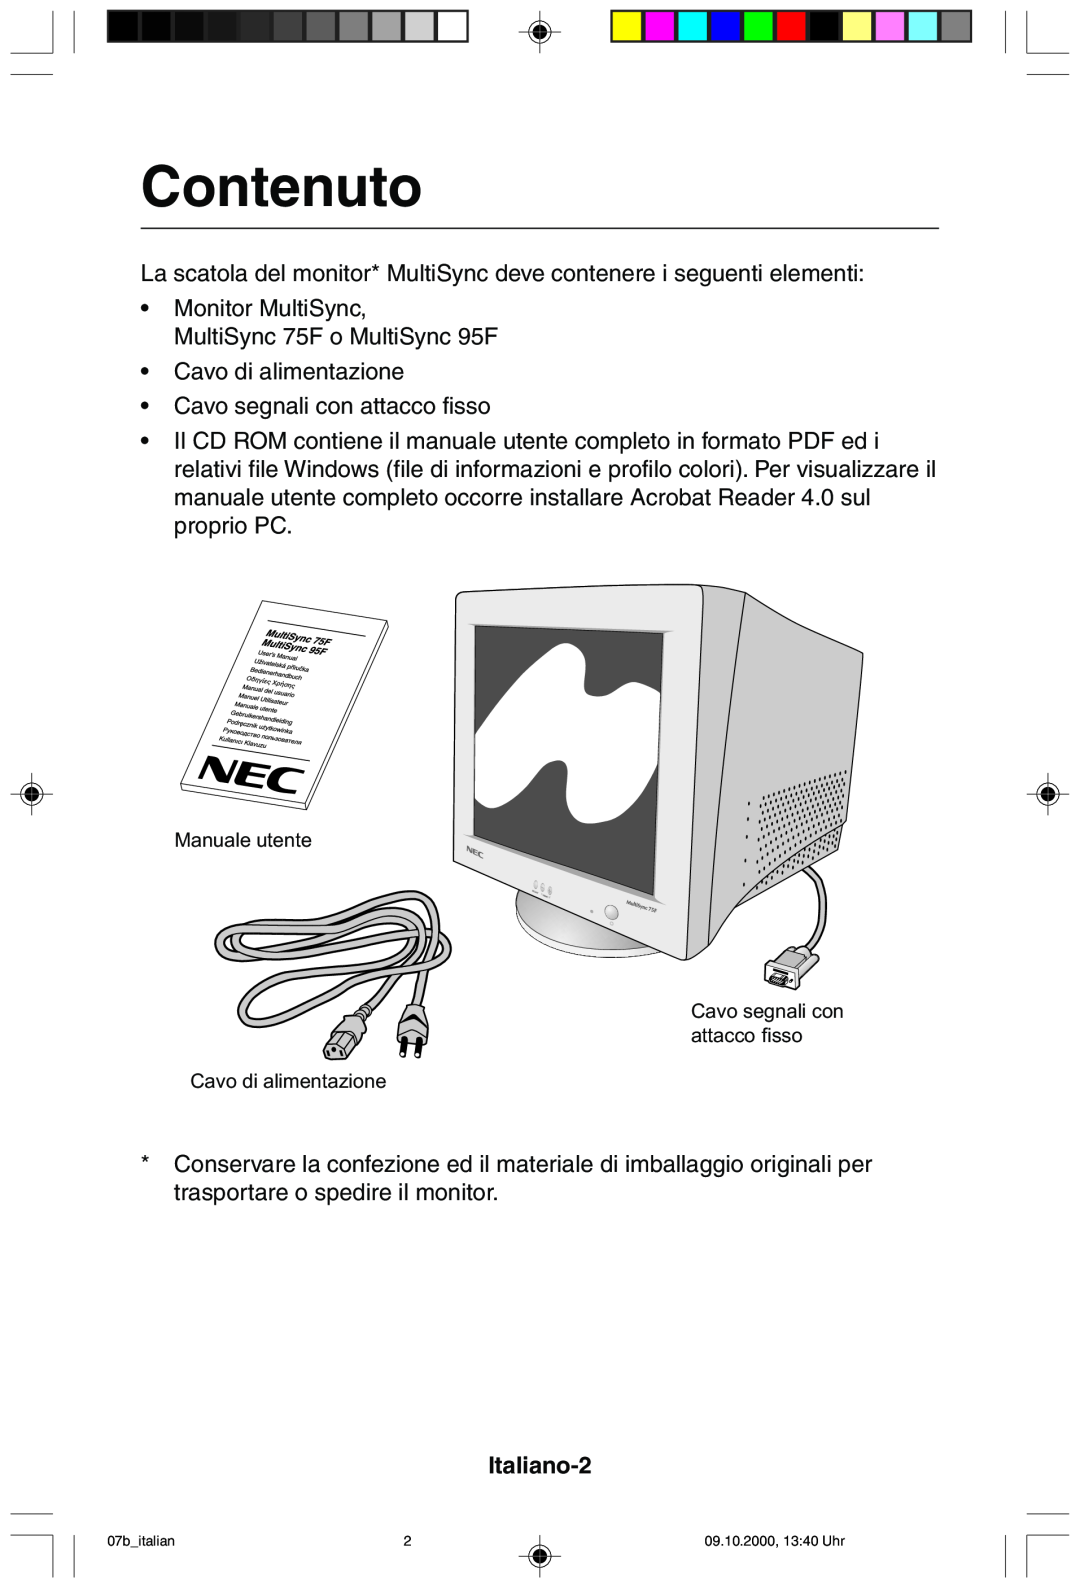 NEC 95F user manual Contenuto, Italiano-2 